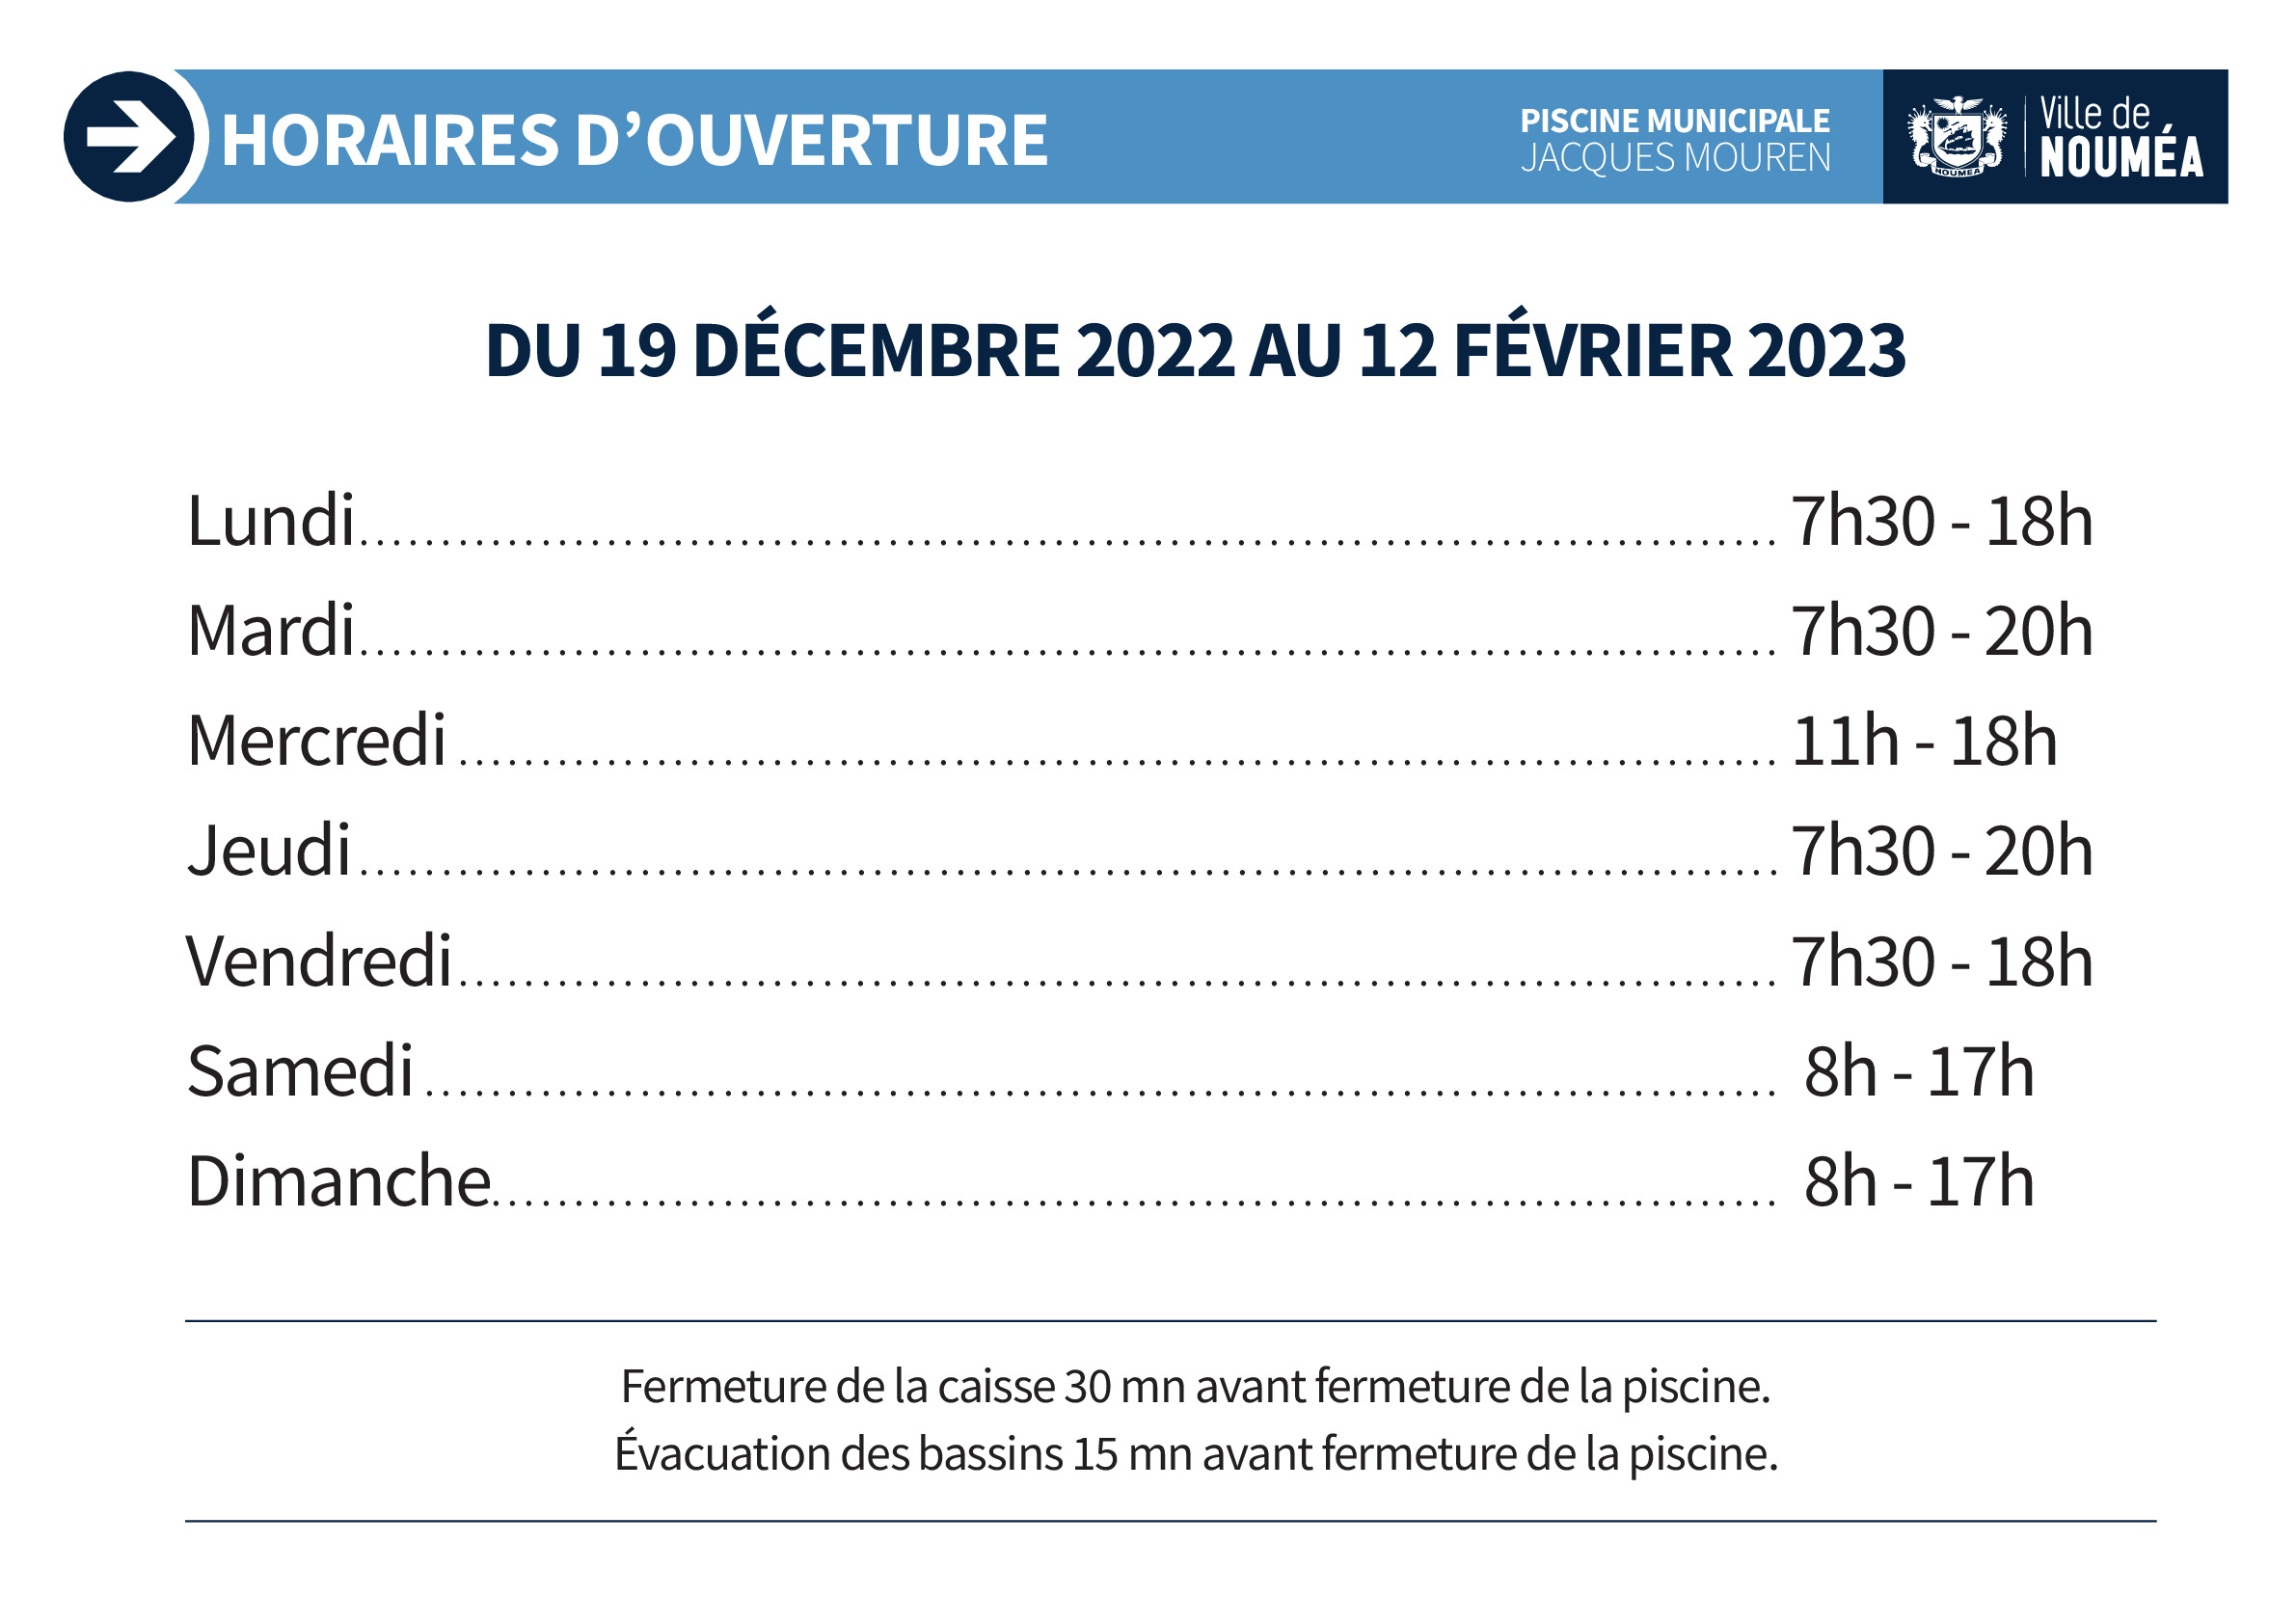 Piscine J-Mouren-19 dec 2022 au 12 fev-2023.pdf